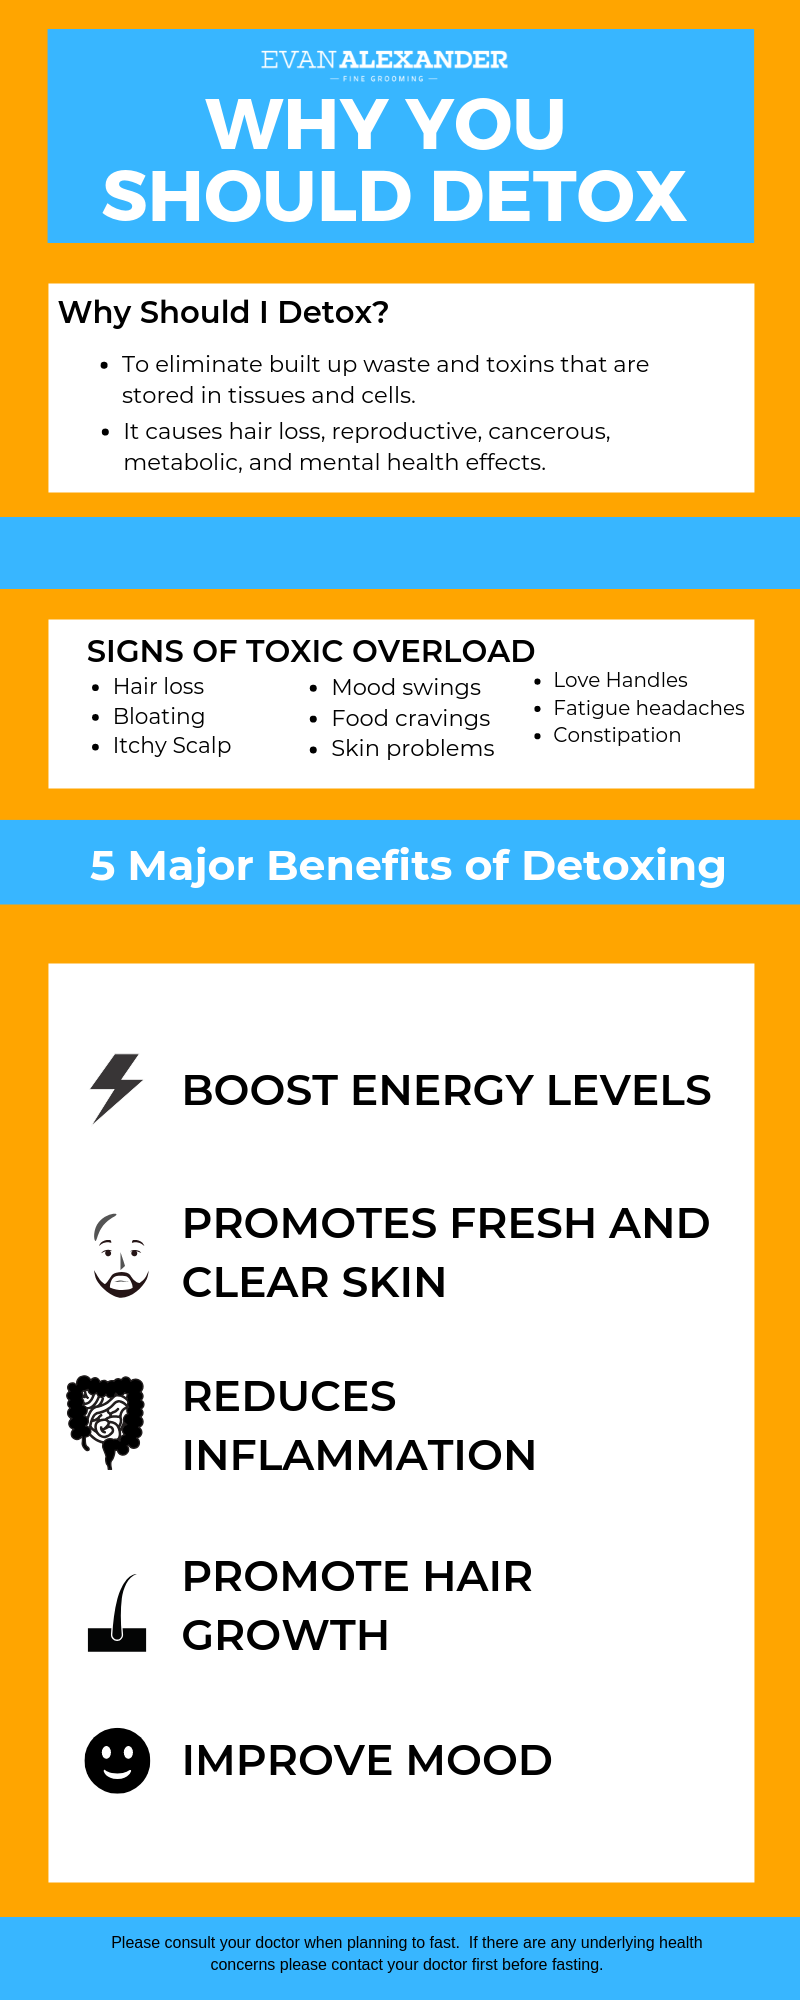 5 Major Detoxing Benefits